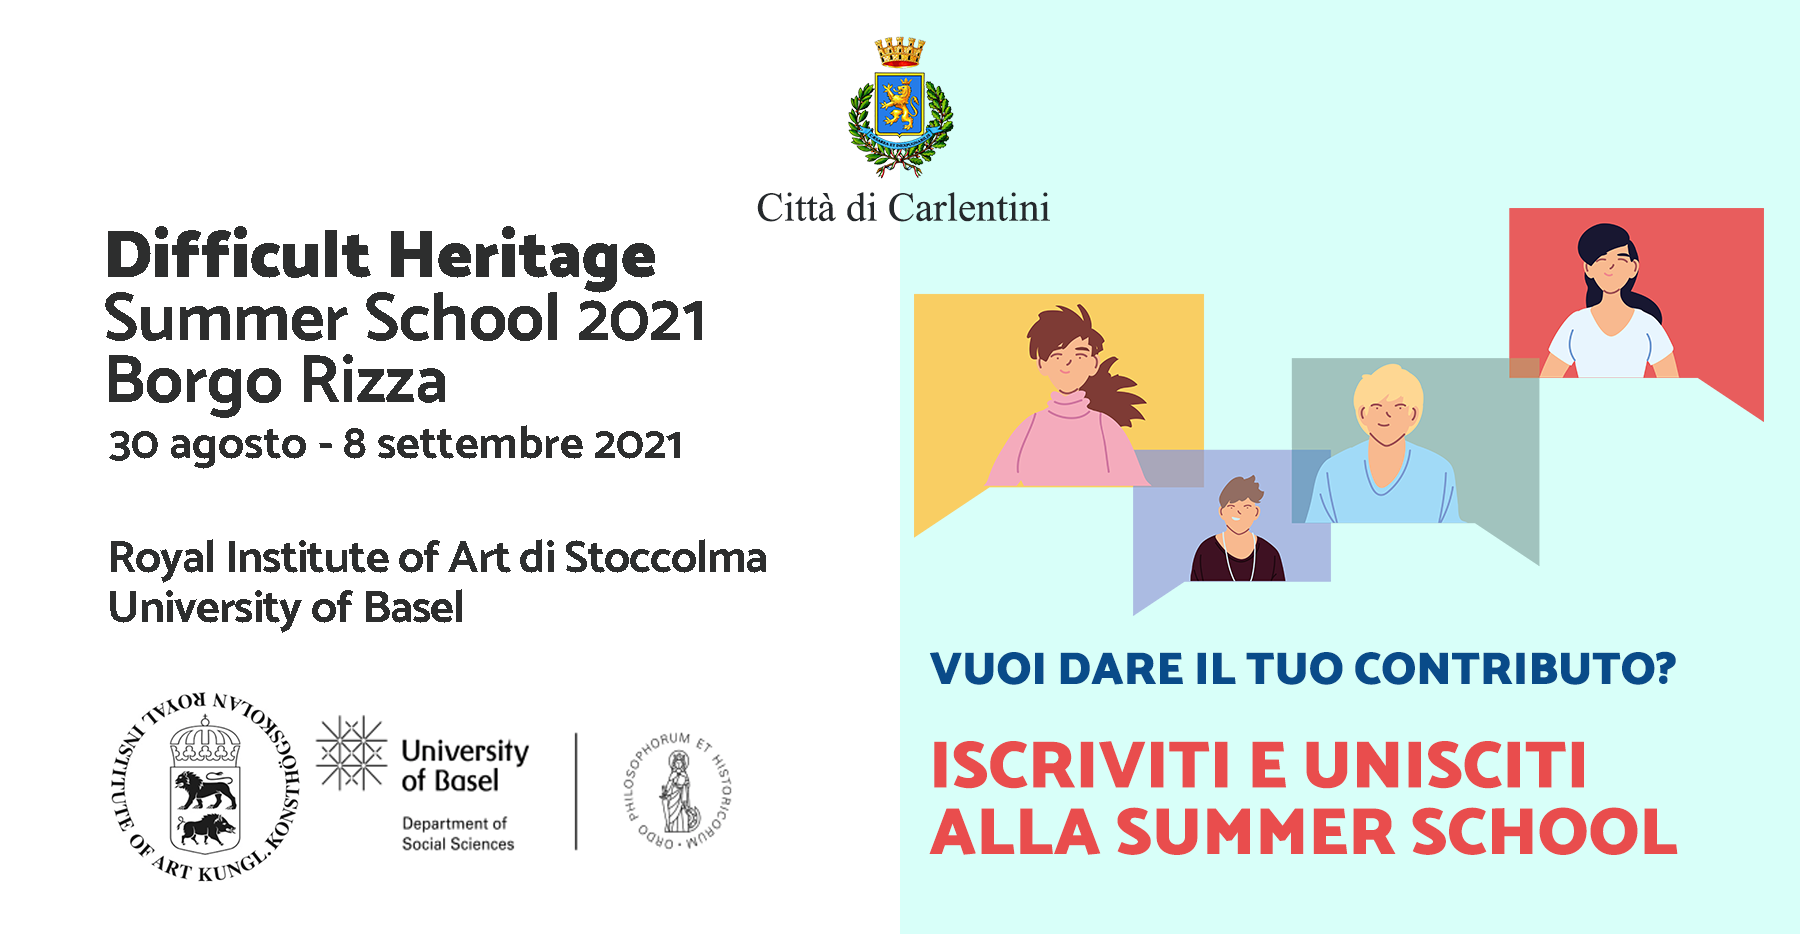 Summer School “Difficult Heritage” 2021: iscriviti e partecipa.